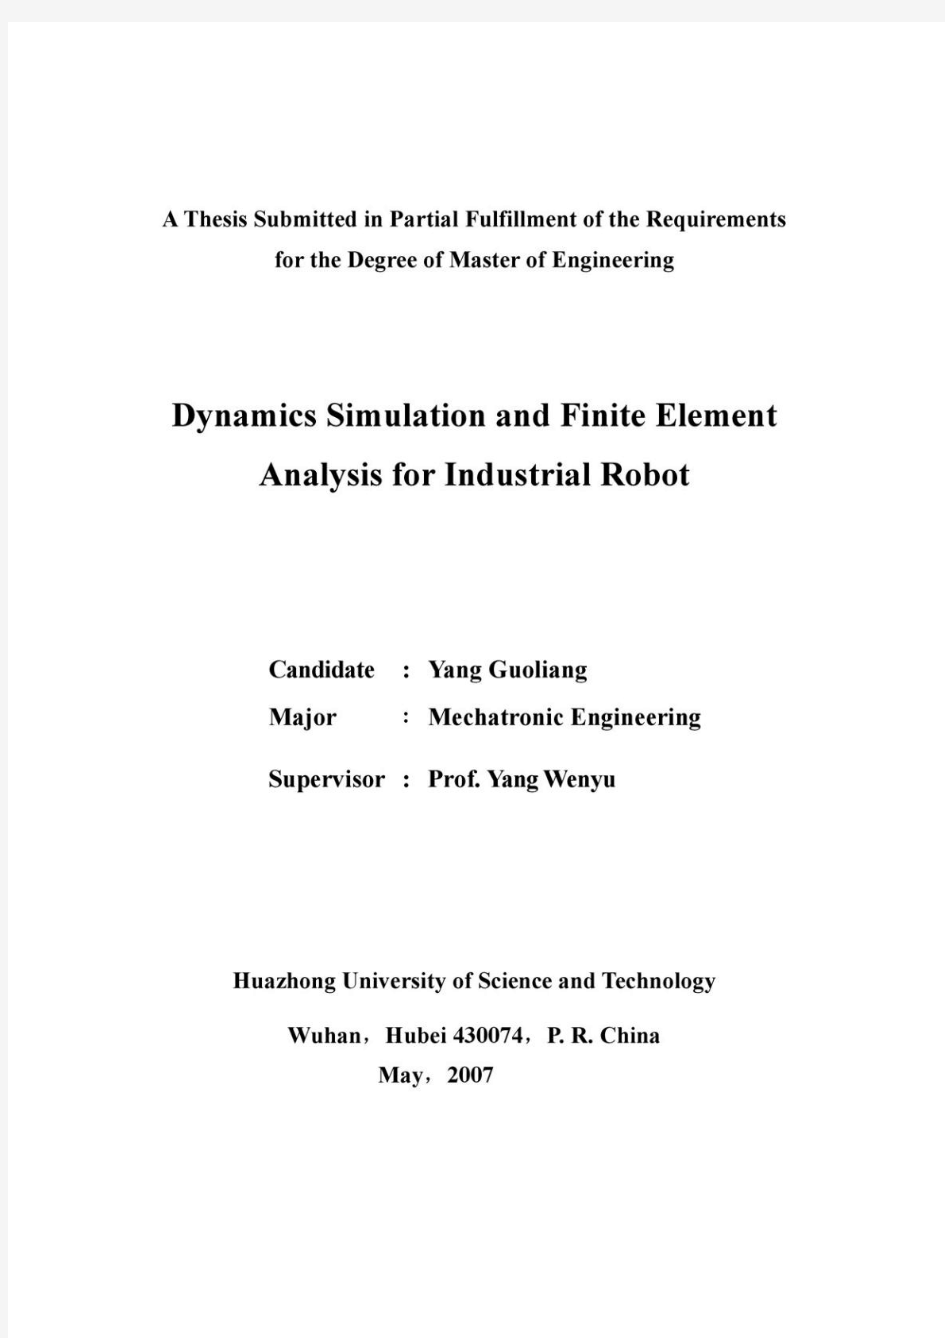 工业机器人动力学仿真及有限元分析(PDF73页)